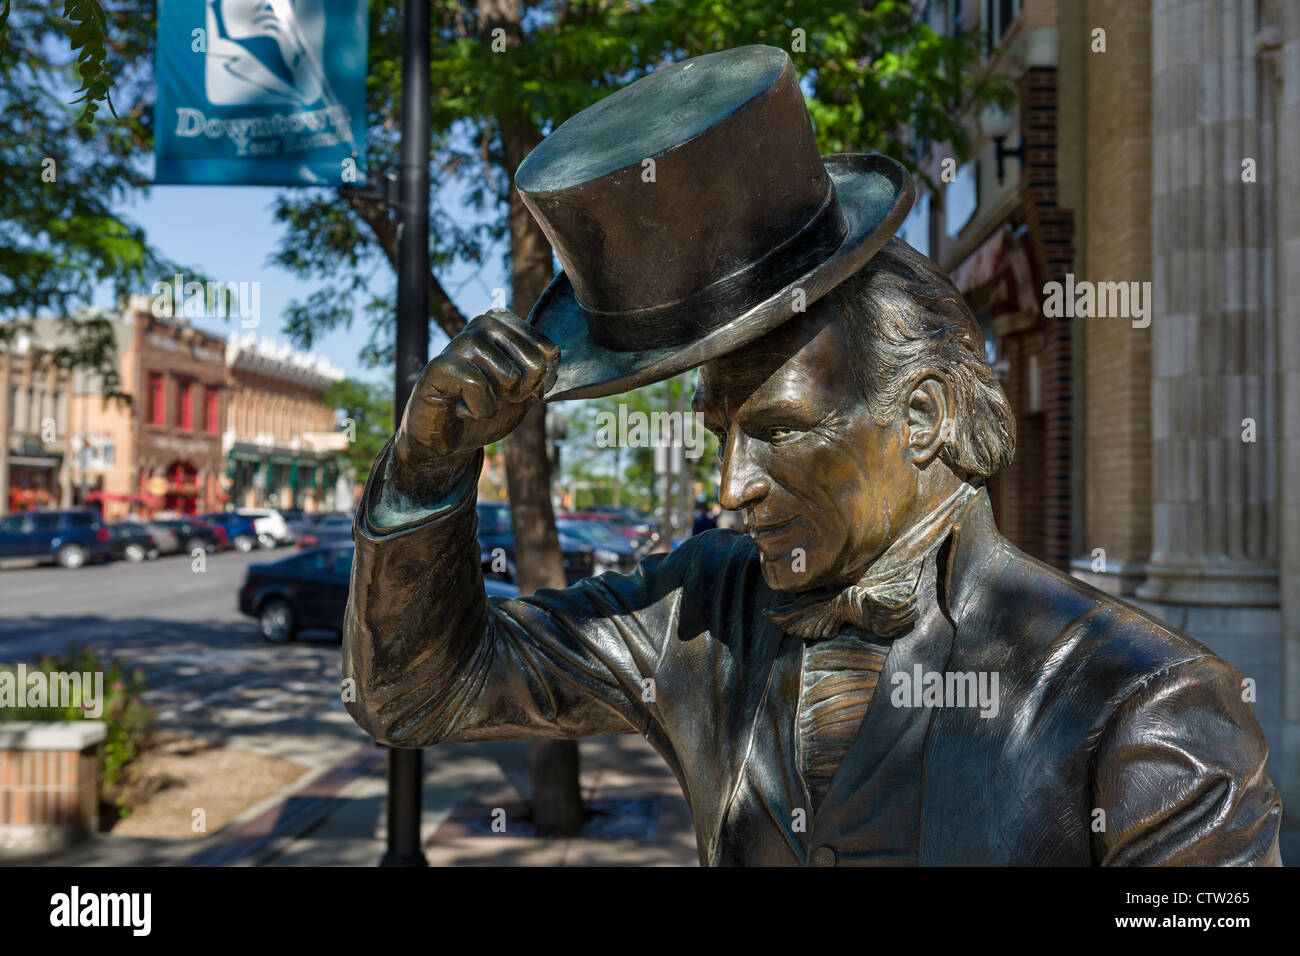 Estatua del presidente James Monroe, una serie de estatuas de bronce de los presidentes de EE.UU. en el centro de la ciudad de Rapid City, Dakota del Sur, EE.UU. Foto de stock